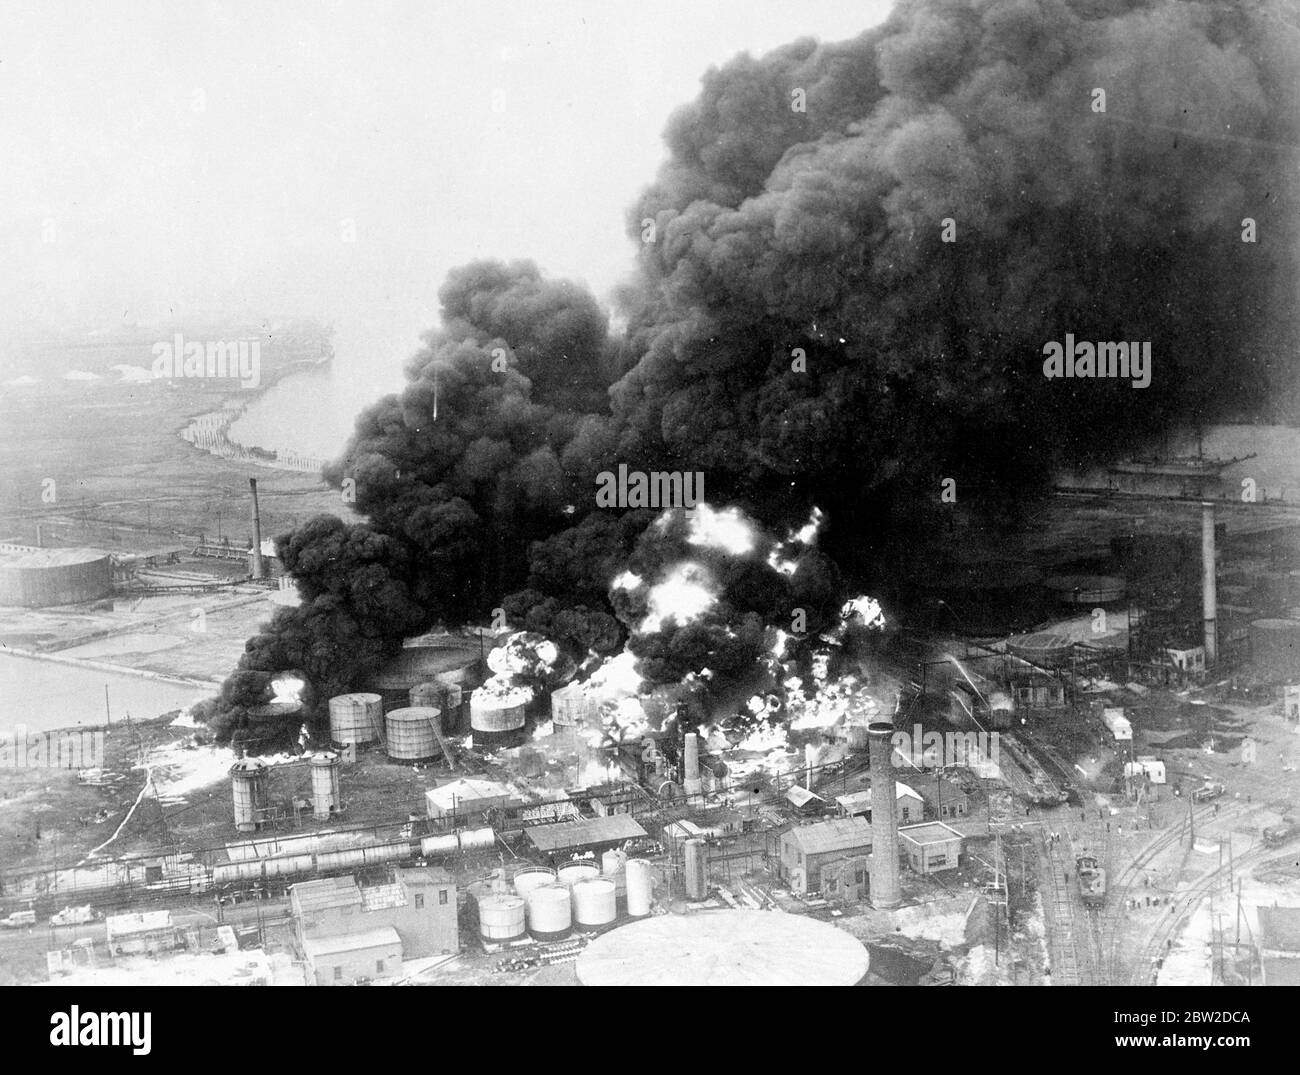 Die schwarzen Wolken aus öligen Rauch und lauernden Flammen, die aus der brennenden Warner Quinlan Oil Refinery-Anlage in Linden, New Jersey, aufsteigen, nachdem eine Explosion die Tanks zerstört und Trümmer von brennenden Öl über ein weites Gebiet verbreitet hatte. Die Züge mussten am 19. Oktober 1938 umgelenkt werden Stockfoto